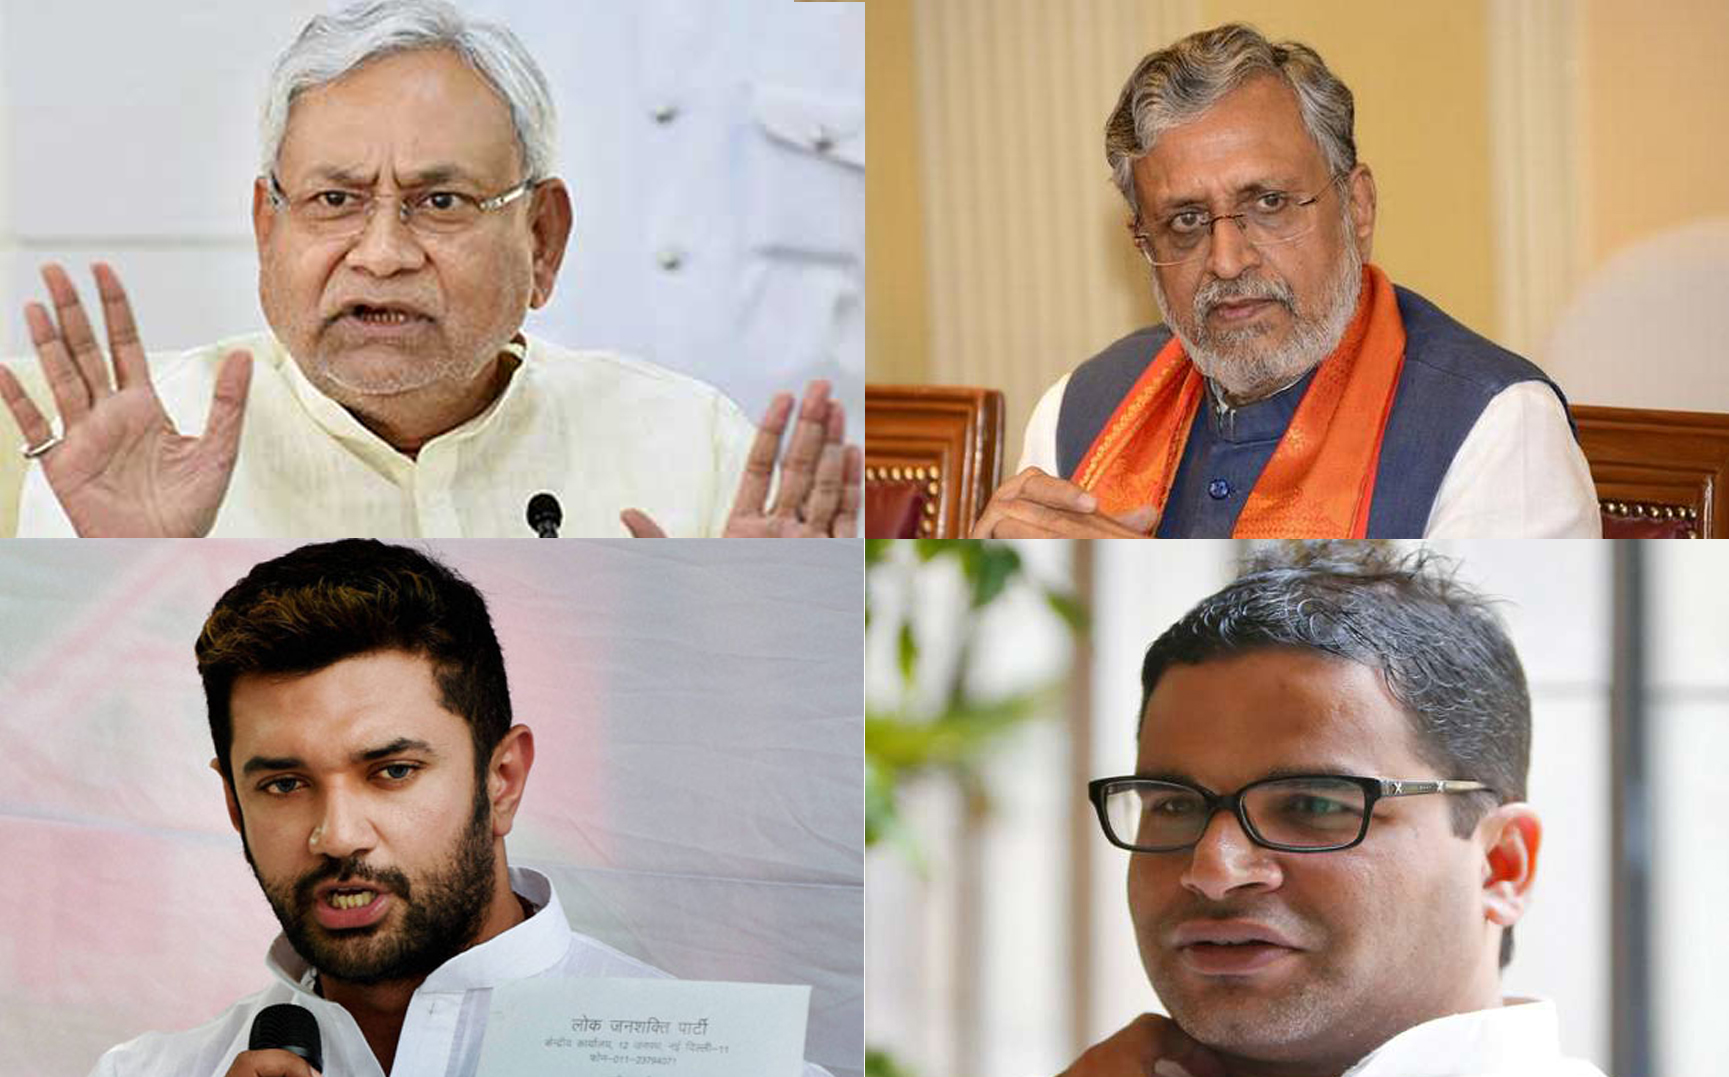 Battle for Bihar: BJP expels 8 rebels